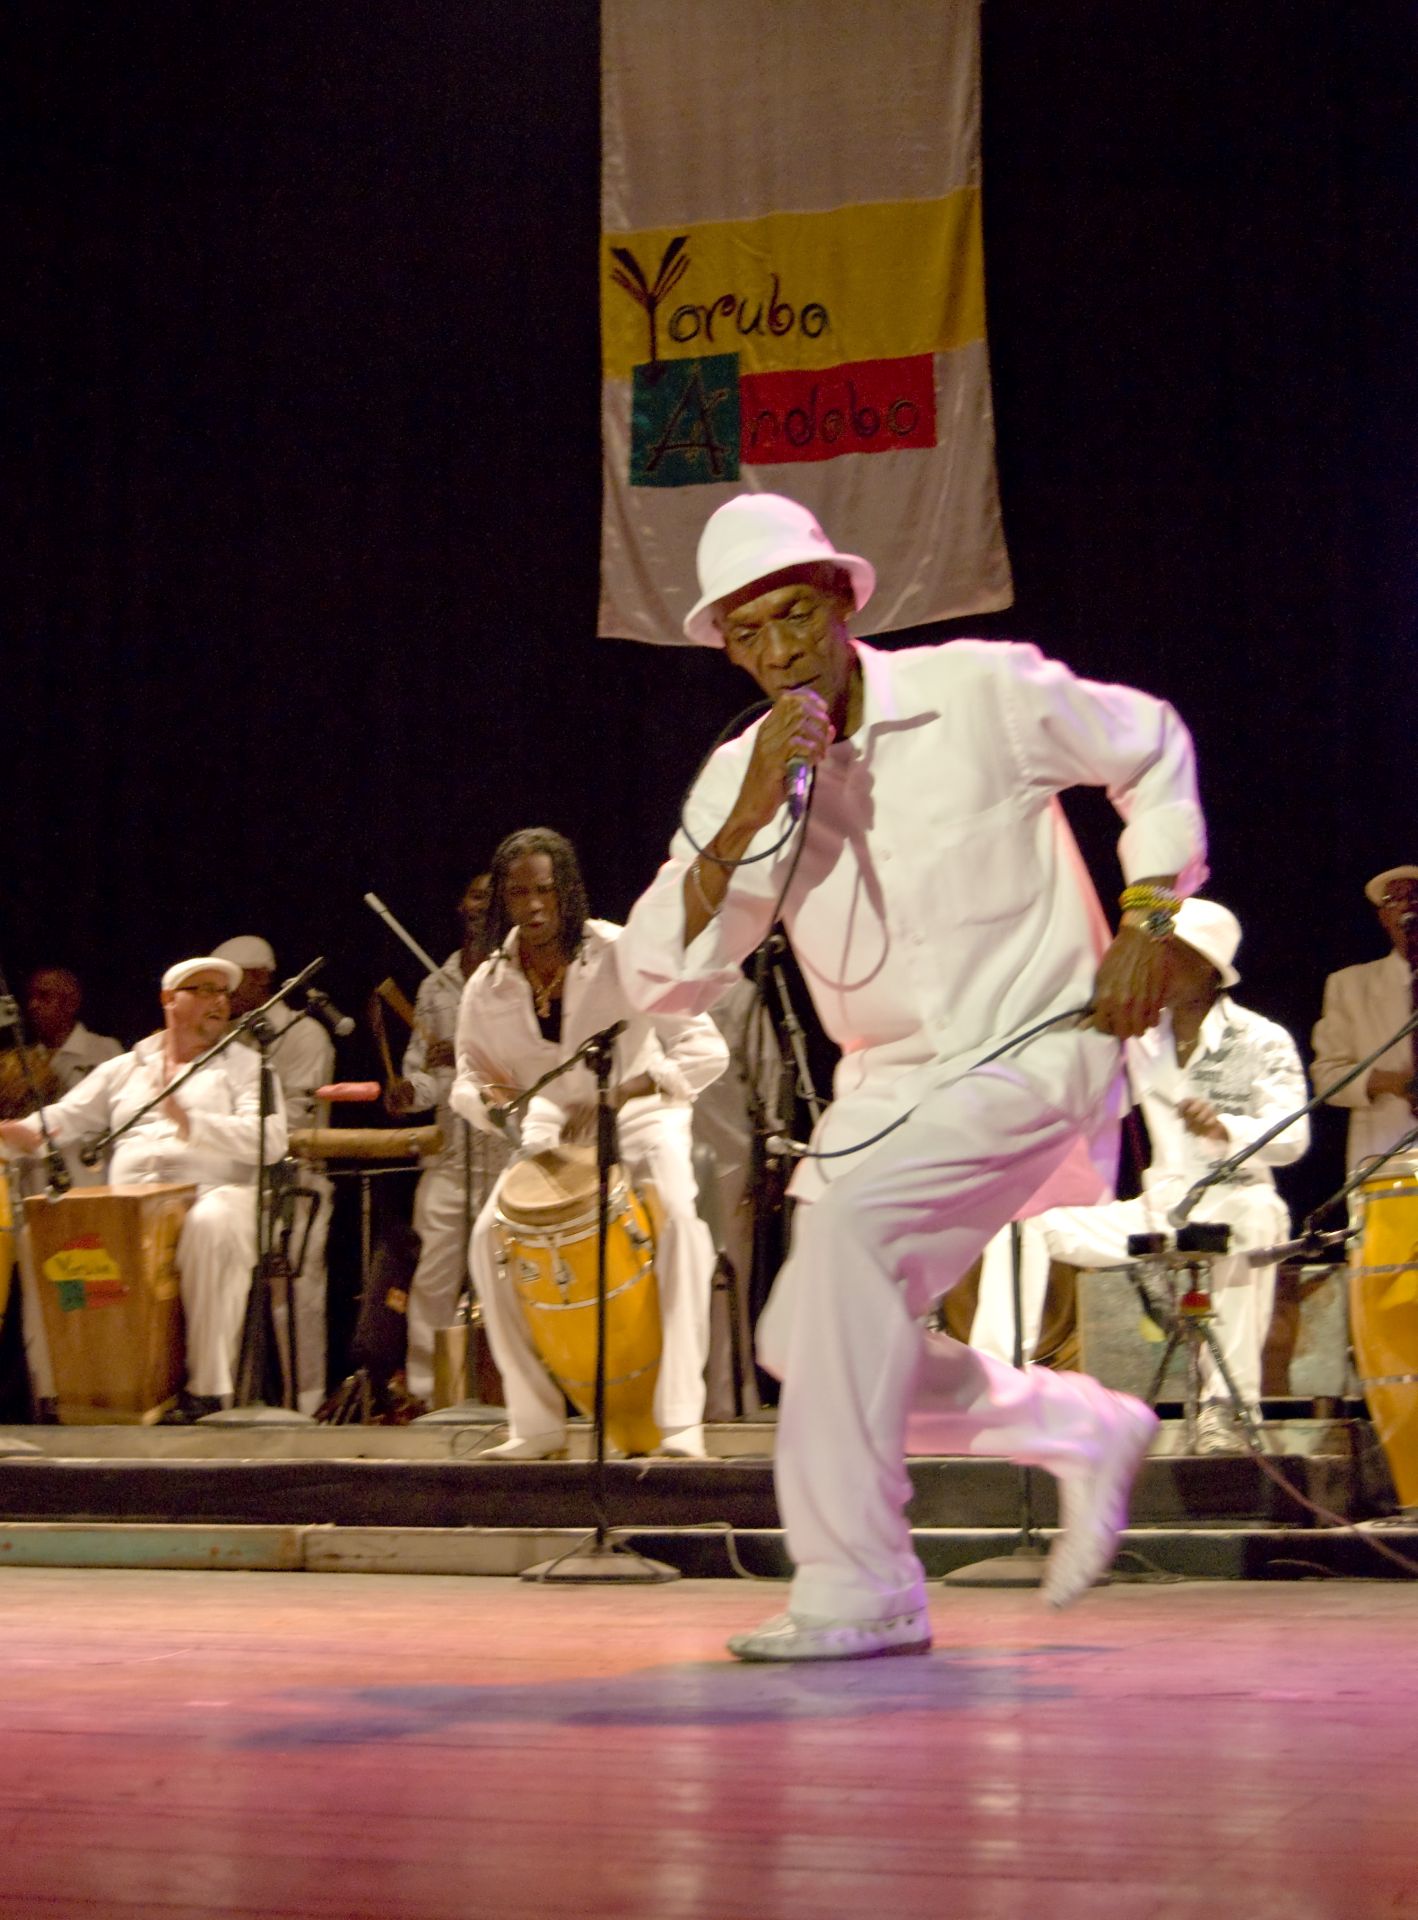 Yoruba Andabo_yoruba andabo conciertoastral_208.jpg